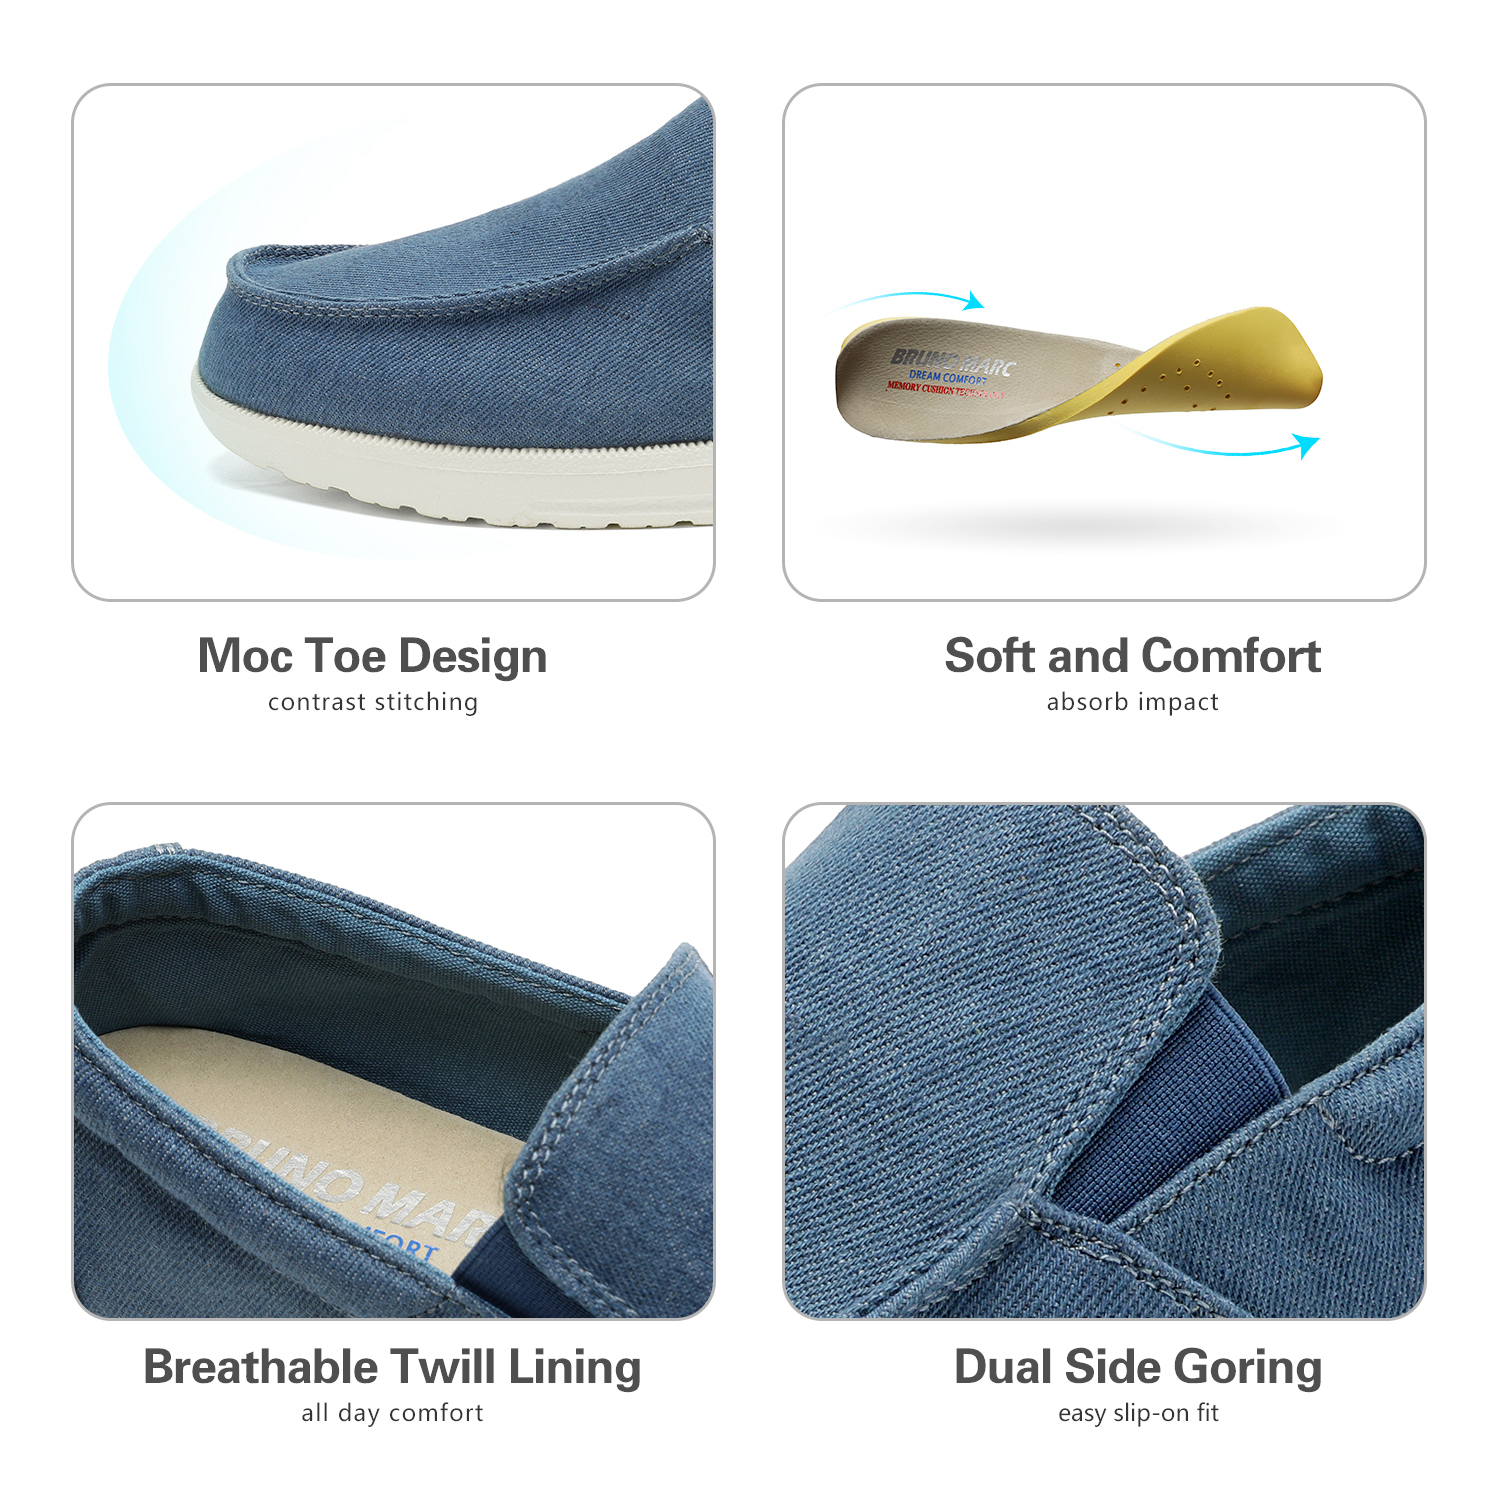 Bruno Marc Men's Slip On Loafer Walking Shoes SUNVENT-01 BLUE/DENIM size 8 - image 4 of 6